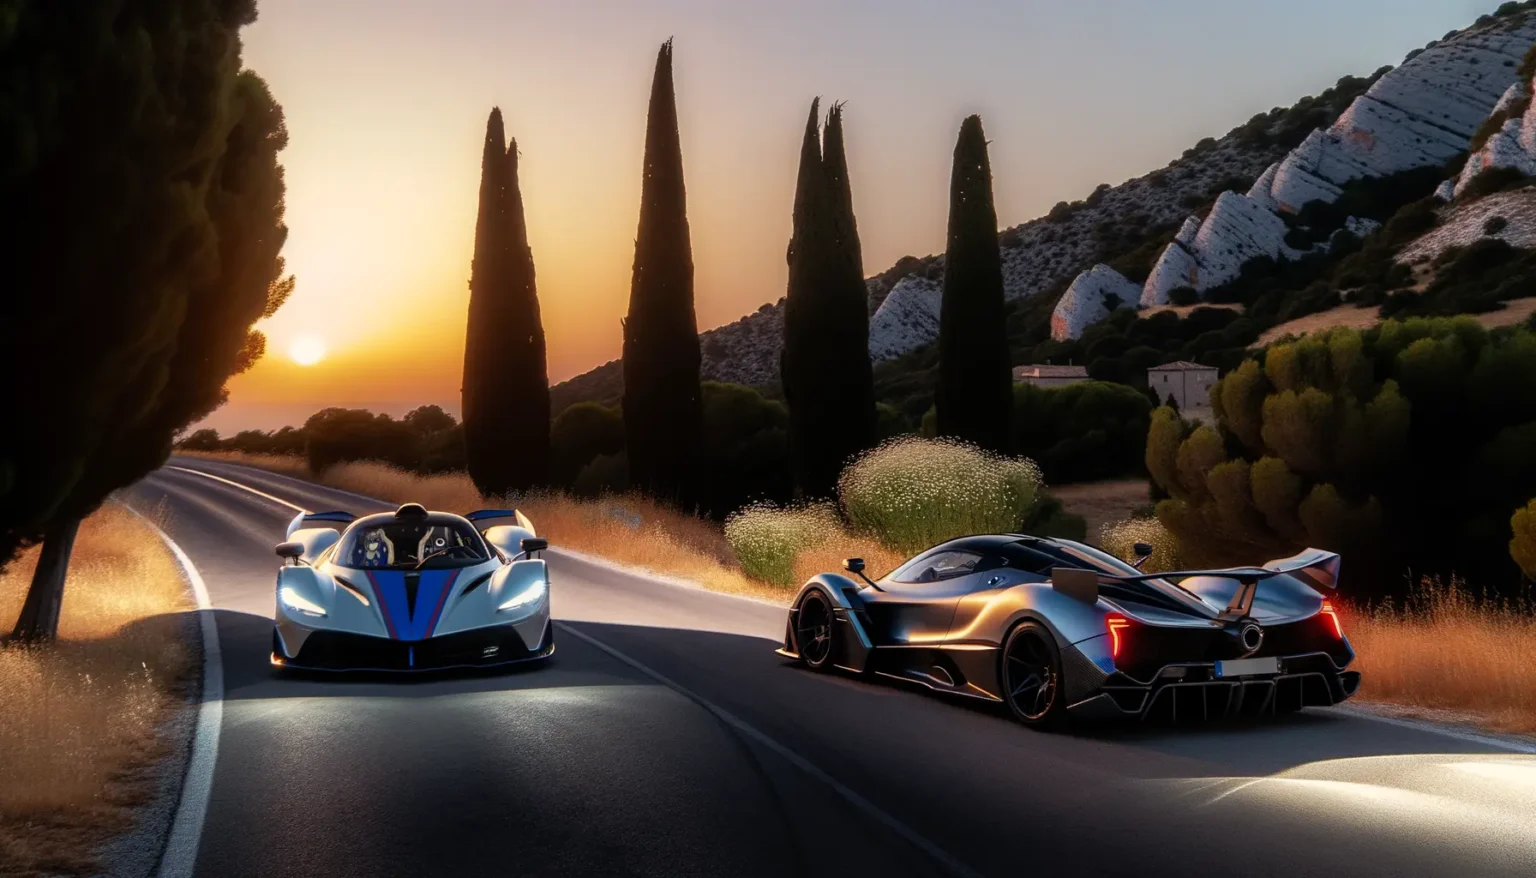 Zwei luxuriöse Sportwagen fahren auf einer kurvigen Landstraße bei Sonnenuntergang, umgeben von hohen Zypressen und felsigen Hügeln. Die Szene strahlt eine ruhige, malerische Atmosphäre aus.